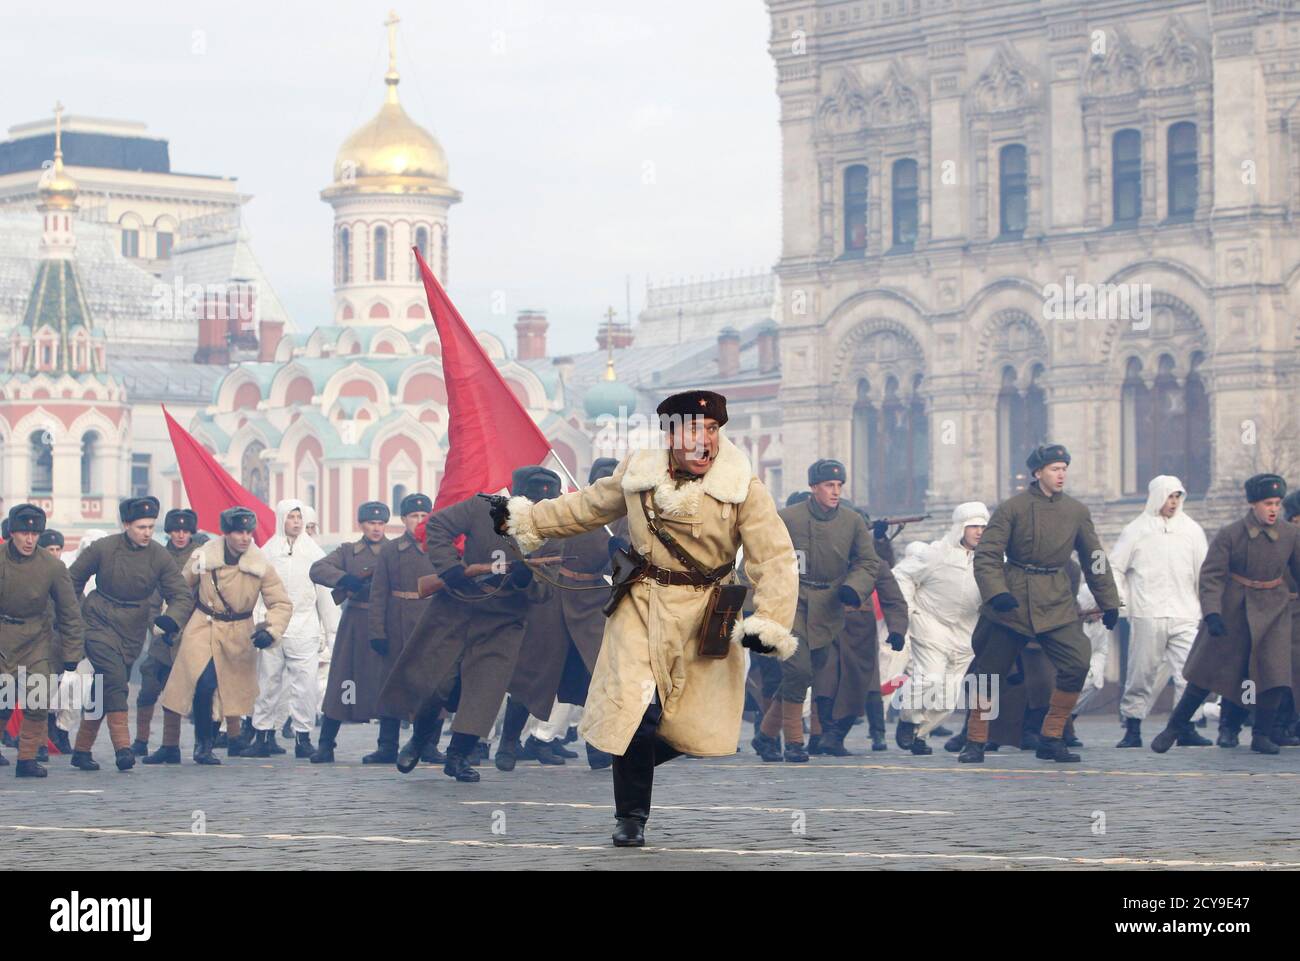 7 ноября 2024 года. Парад на красной площади 1941. Парад 7 ноября 1941. Парад на красной площади 7 ноября 1941 года. Фото парада 7 ноября 1941 года на красной площади в Москве.